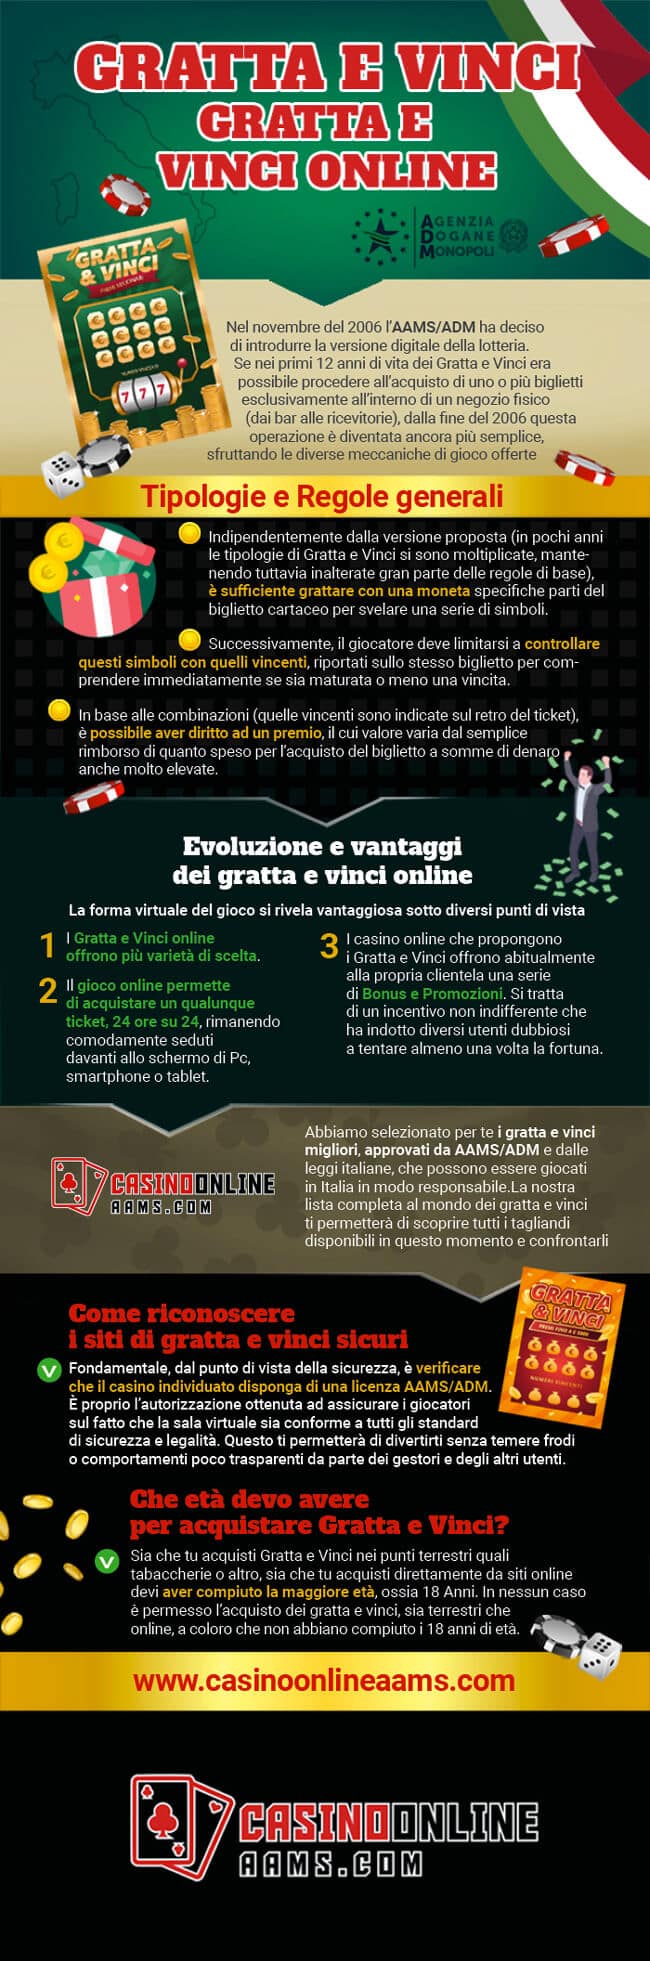 Infografica sui Gratta e Vinci